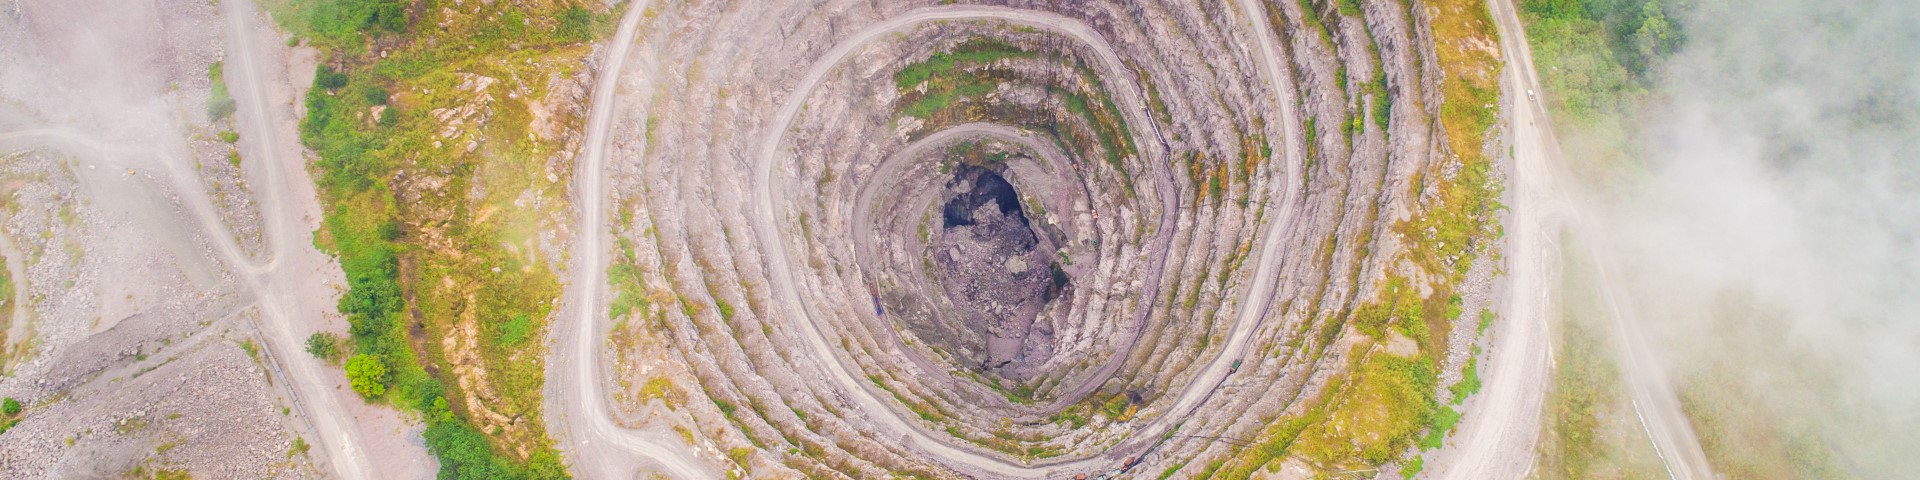 Eine Luftaufnahme einer steinigen und spiralförmigen Öffnung im Boden.